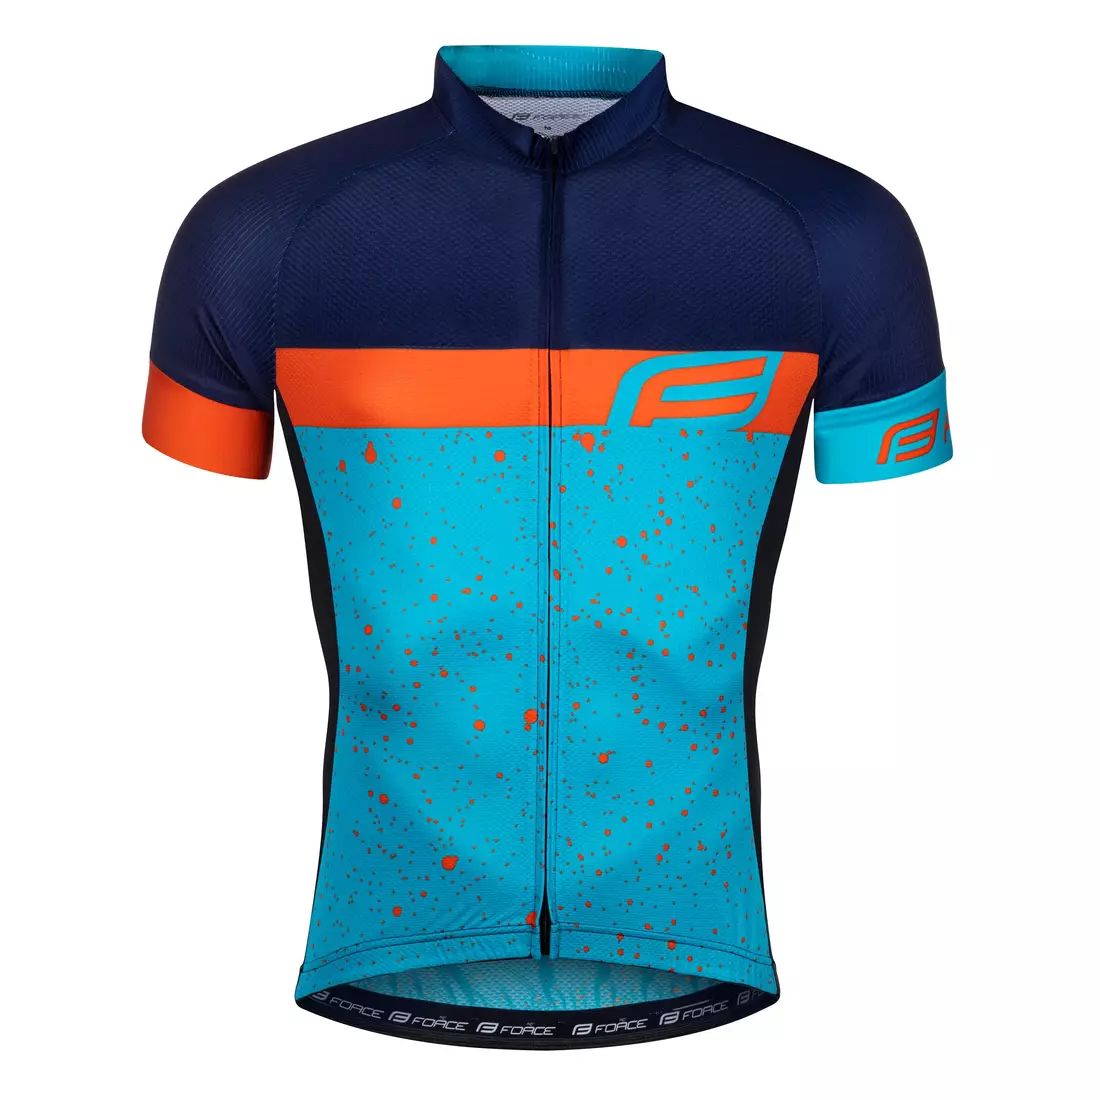 FORCE pánske cyklistické tričko SPRAY blue-orange 9001272